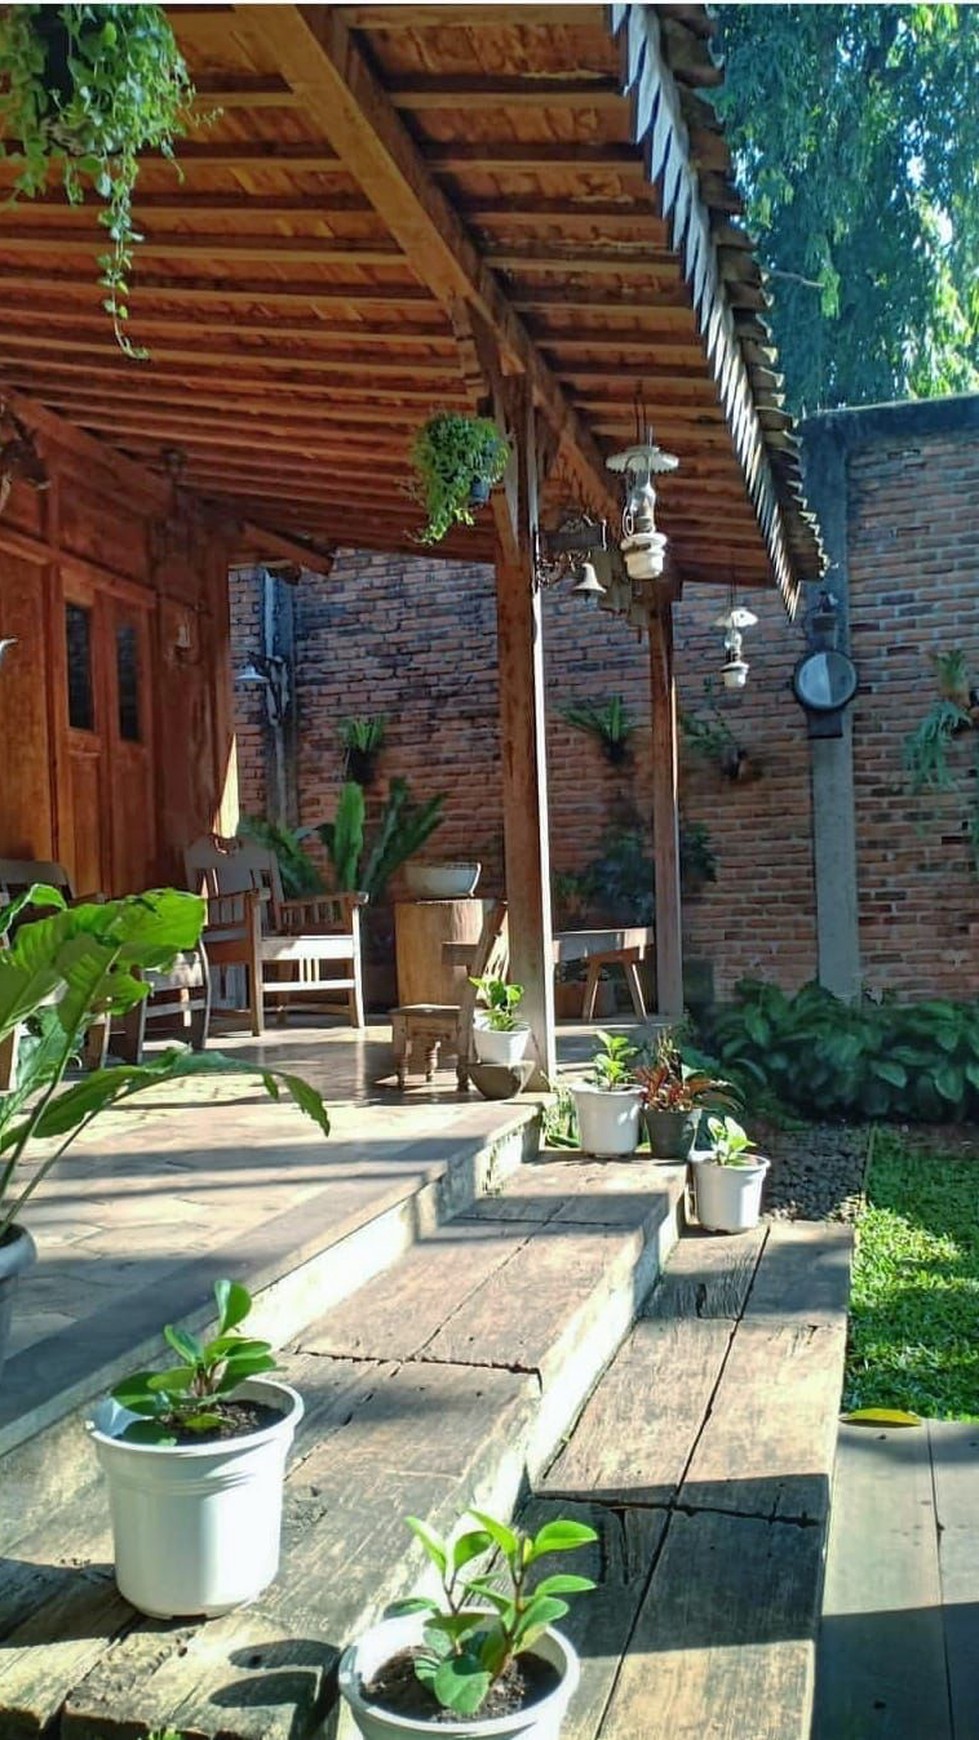 Rumah Nyaman, Bagus, dengan halaman yang luas dan Asri di Bintaro